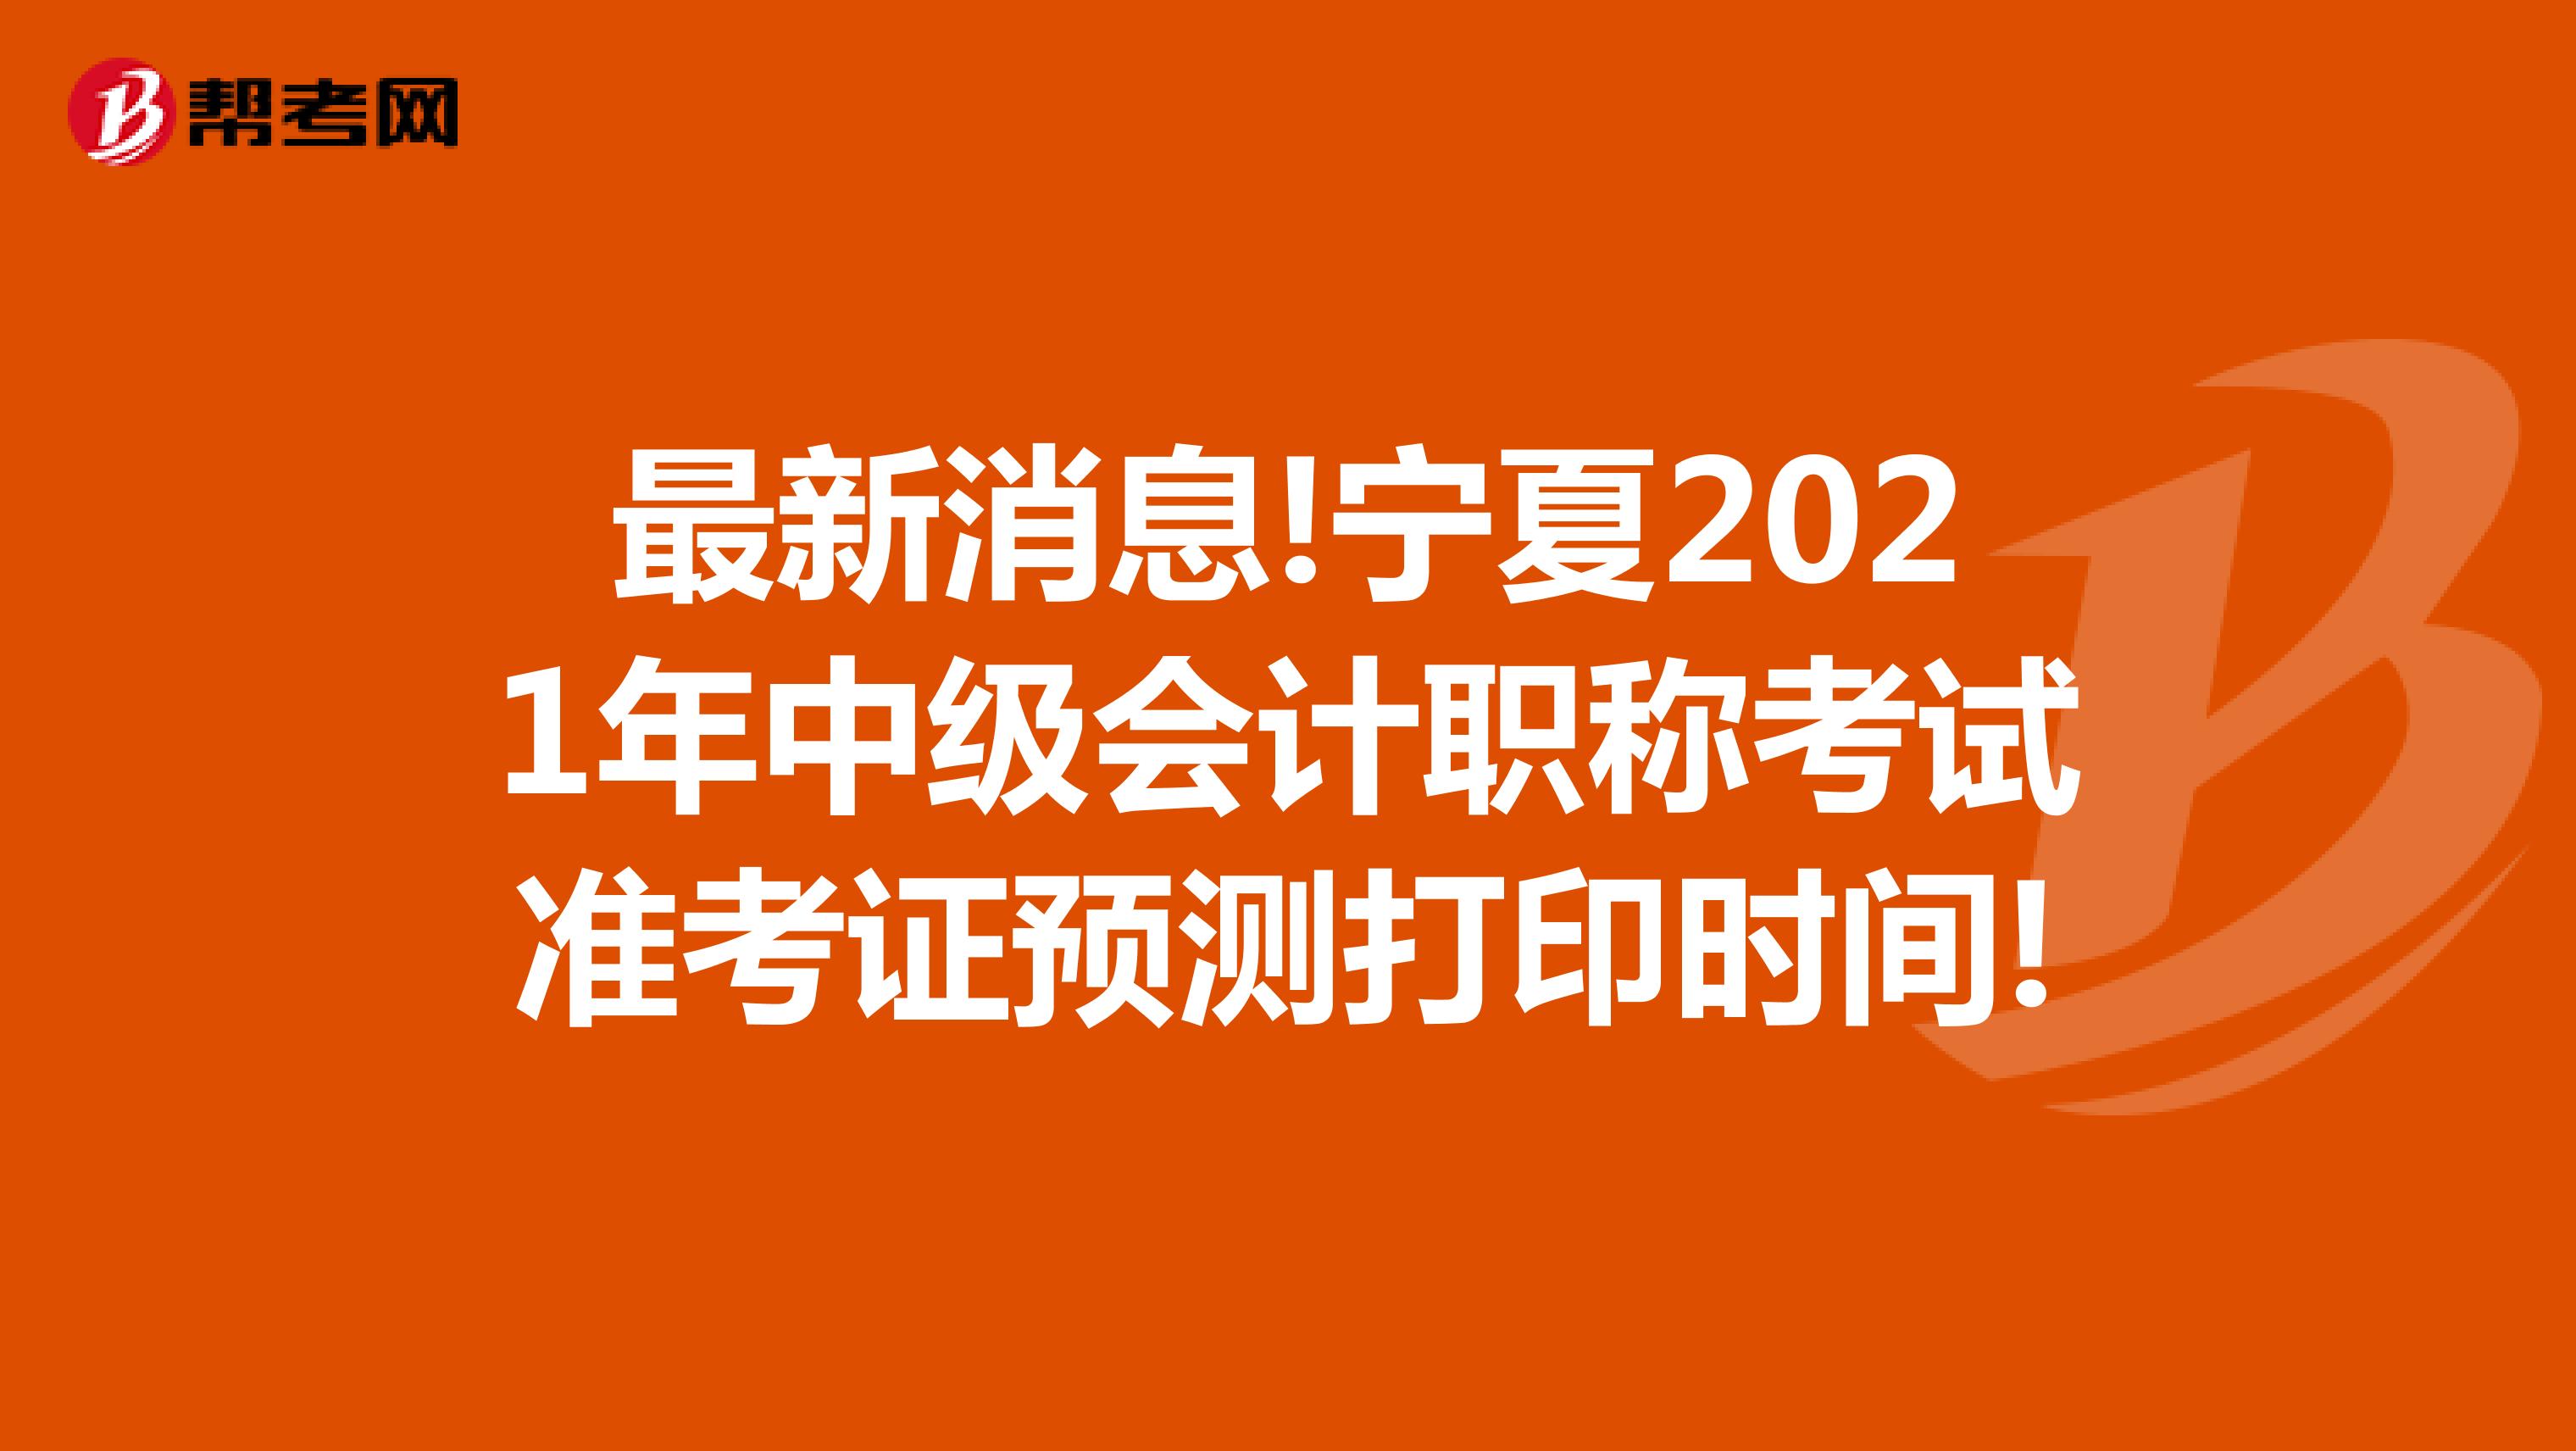 最新消息!宁夏2021年中级会计职称考试准考证预测打印时间!